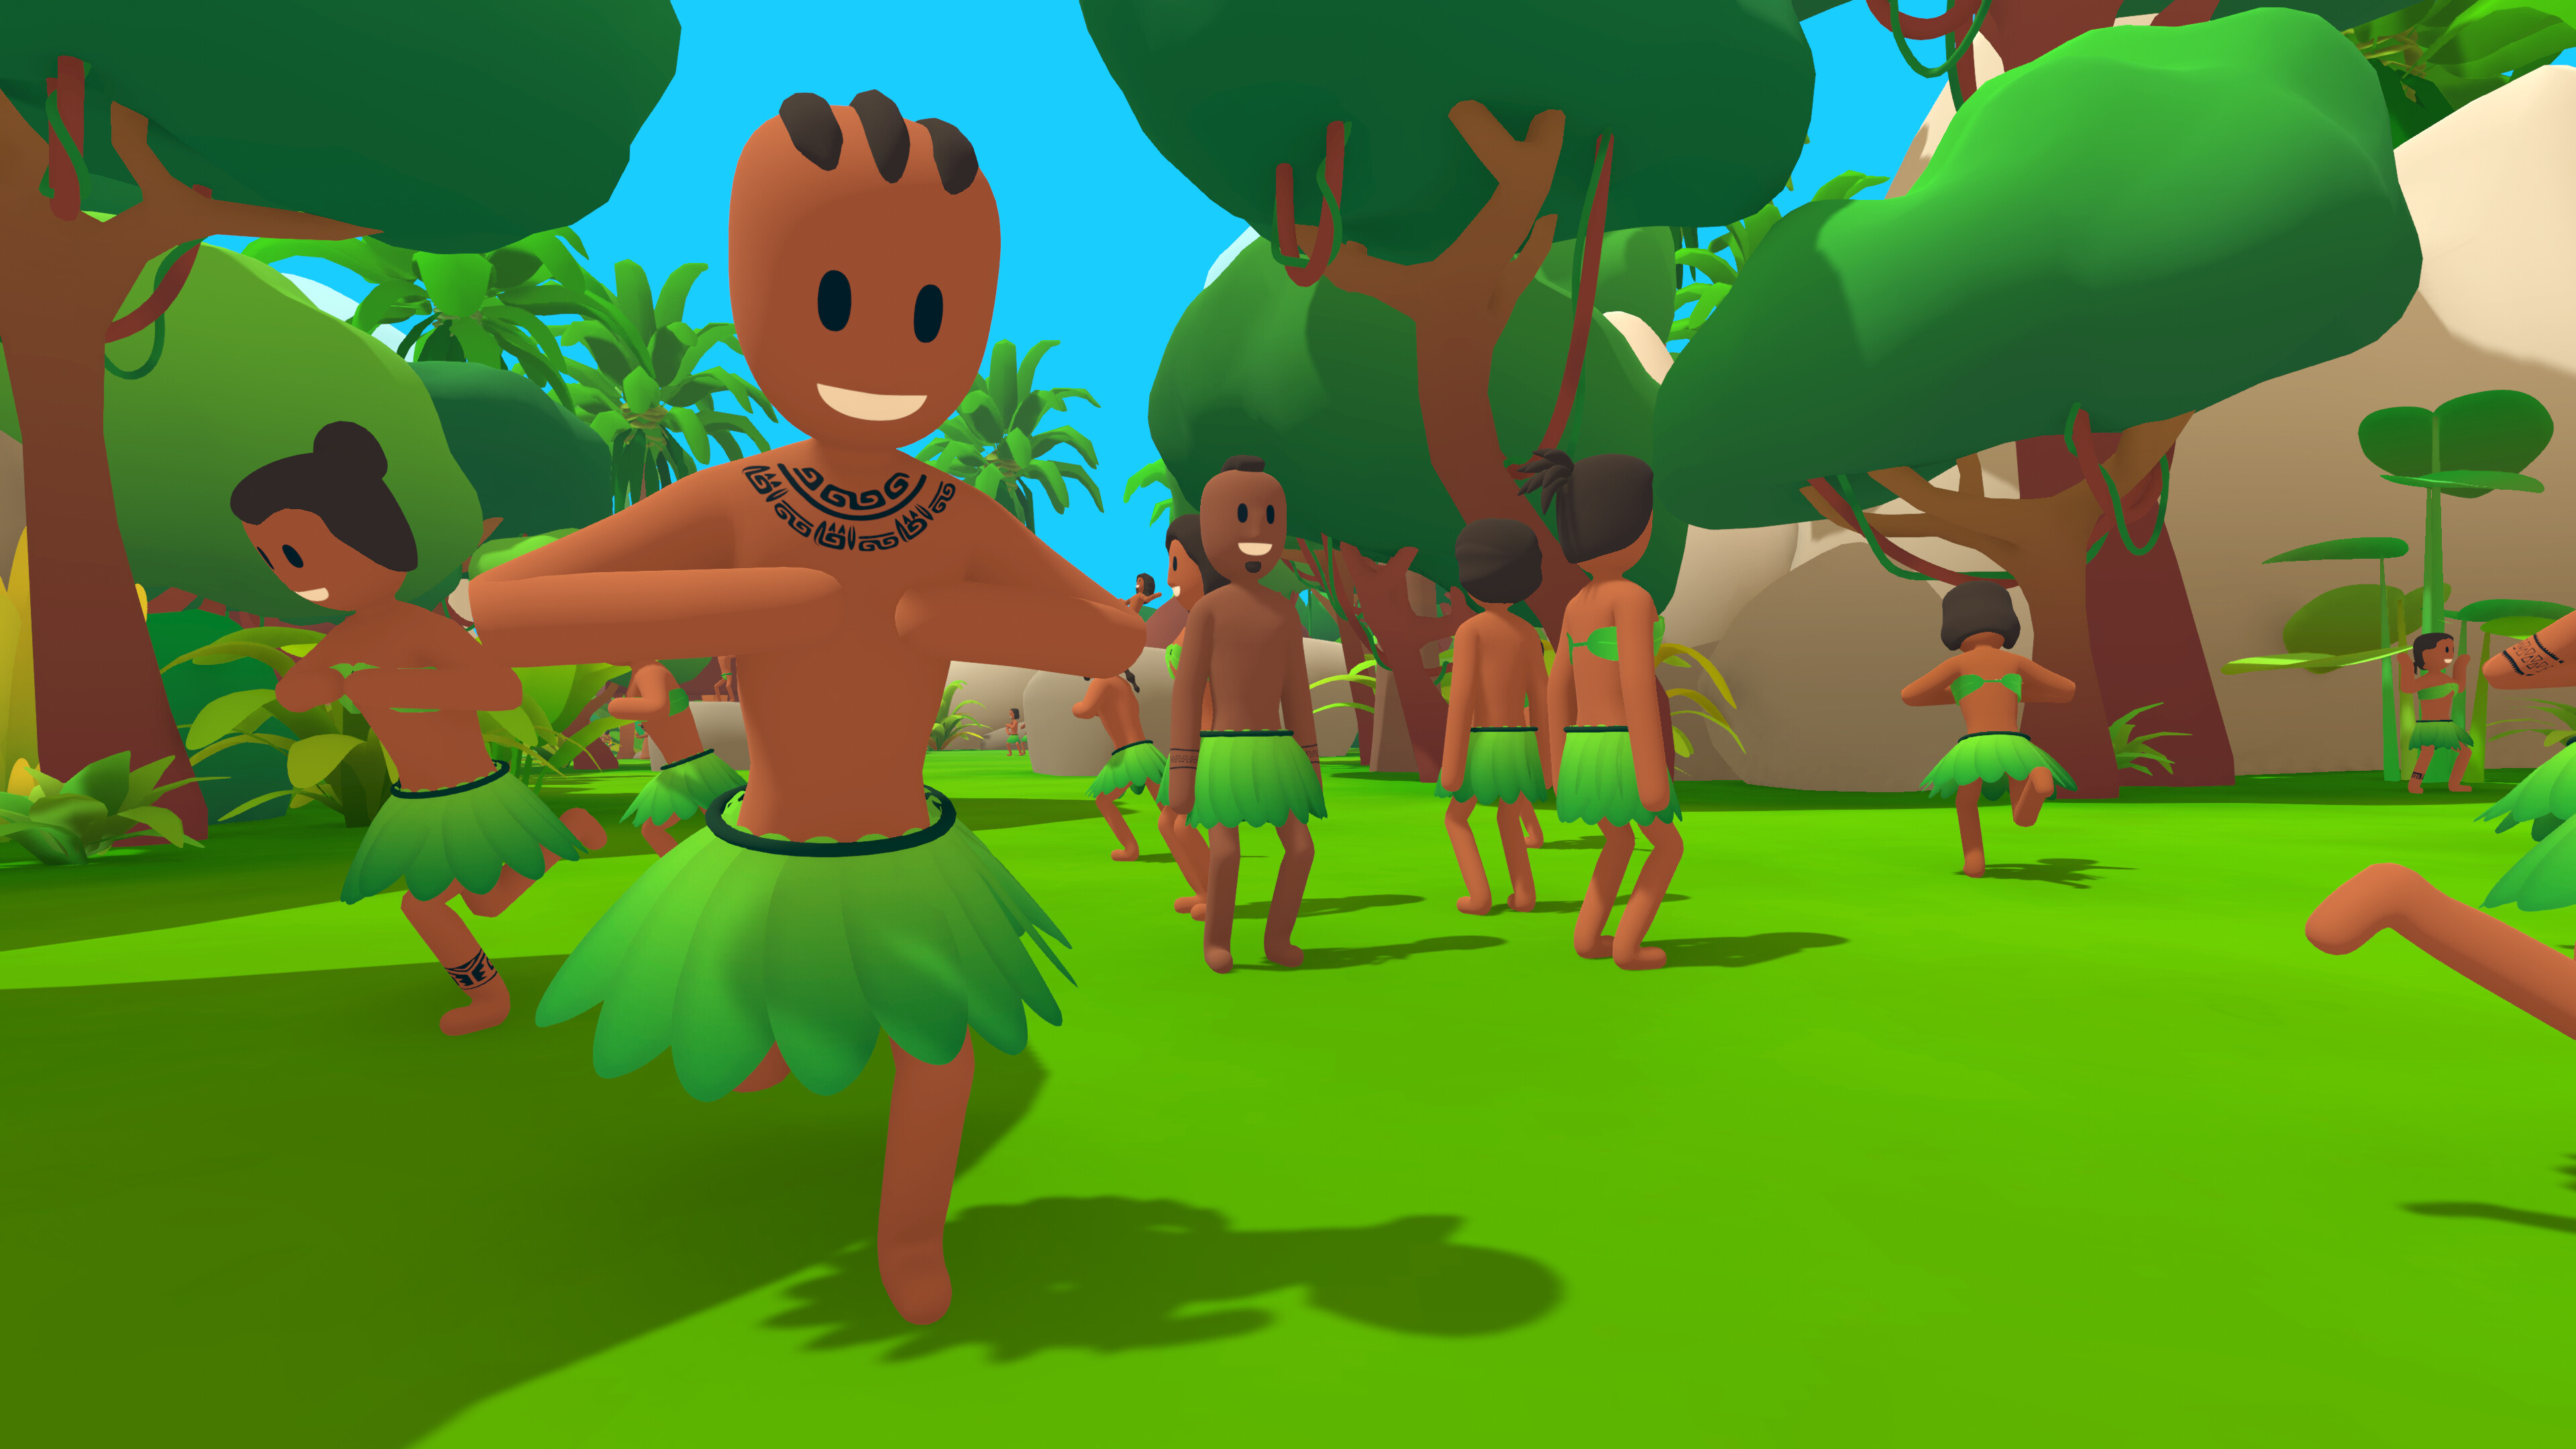 Personajes del videojuego en una selva